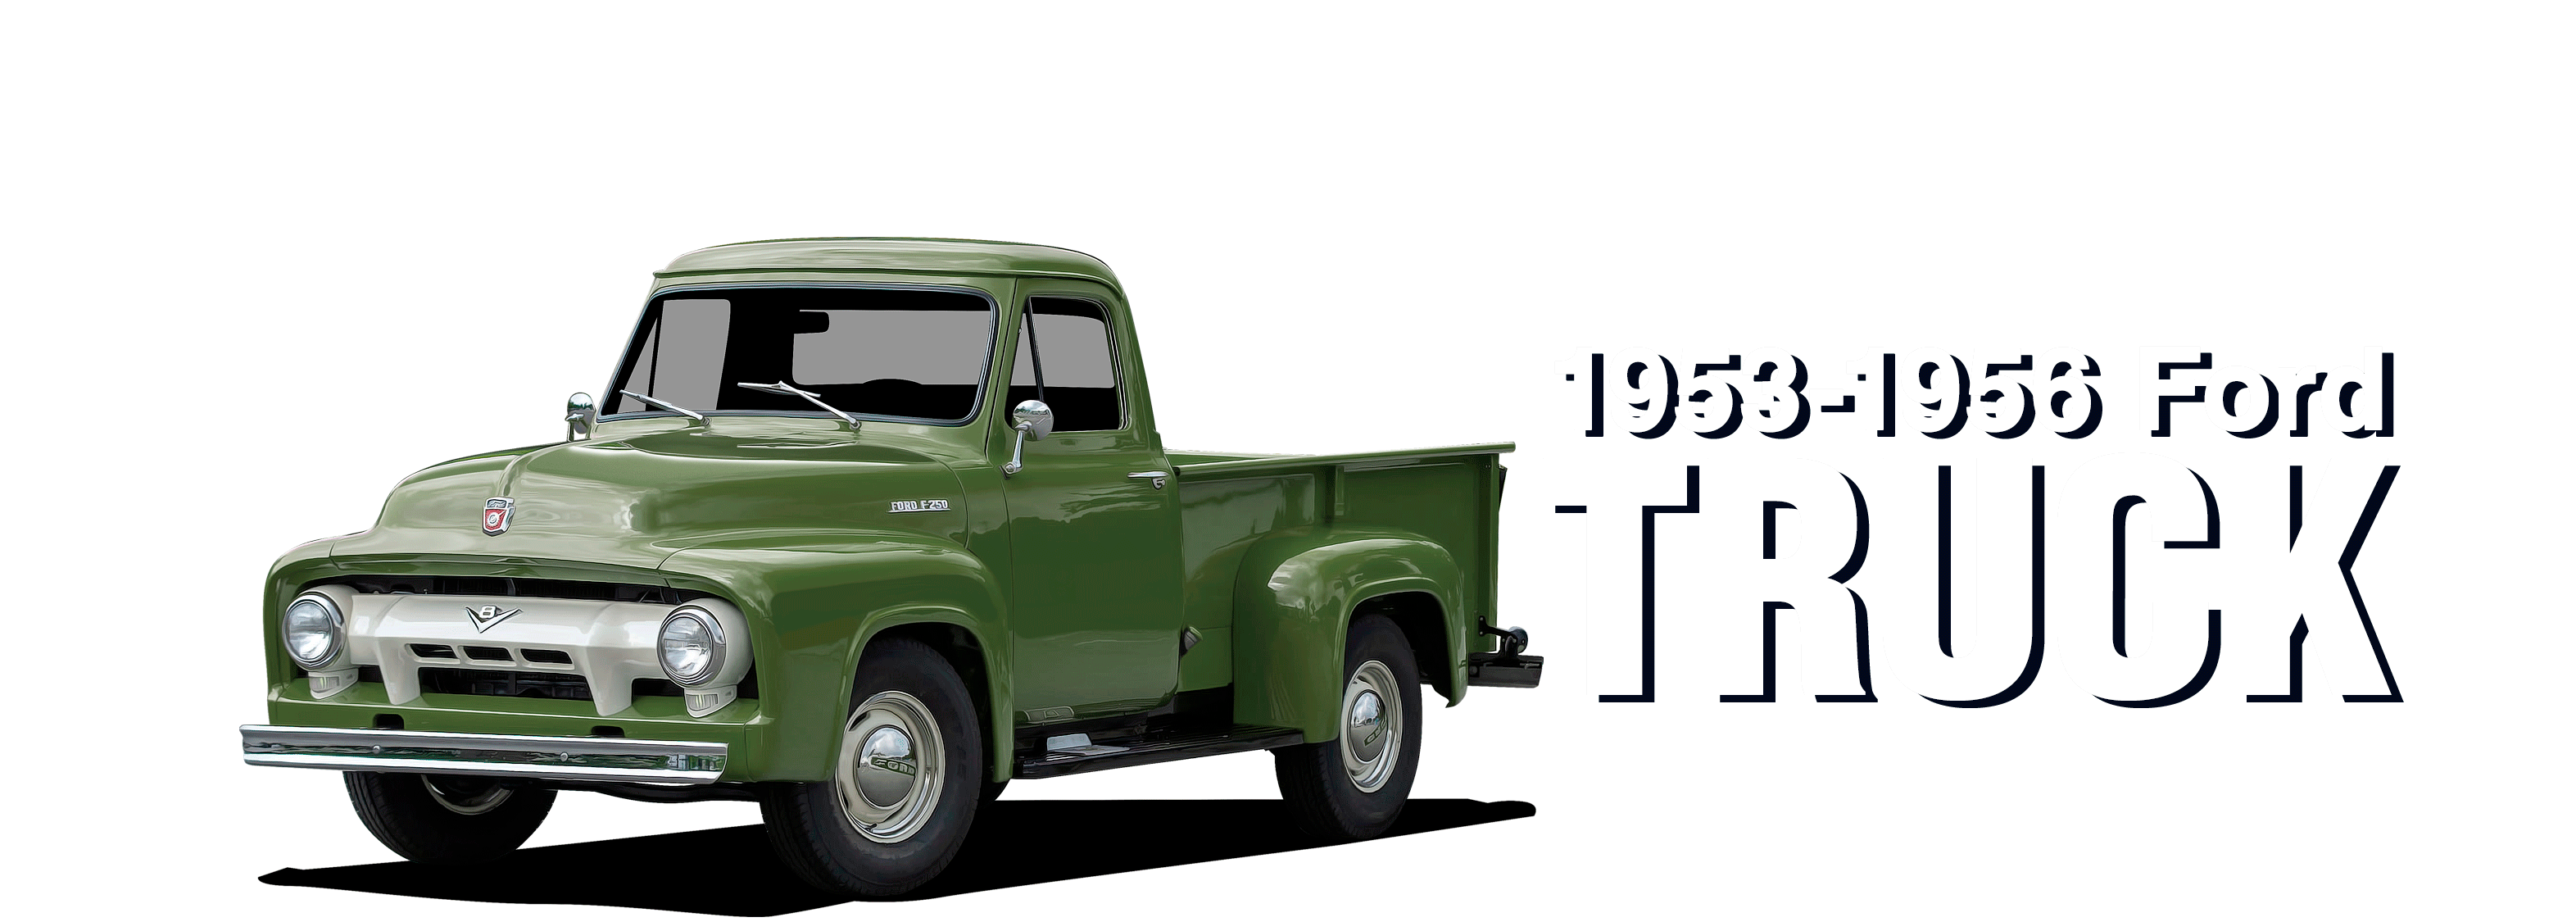 53-56FordTruck-vehicle-desktop_v2